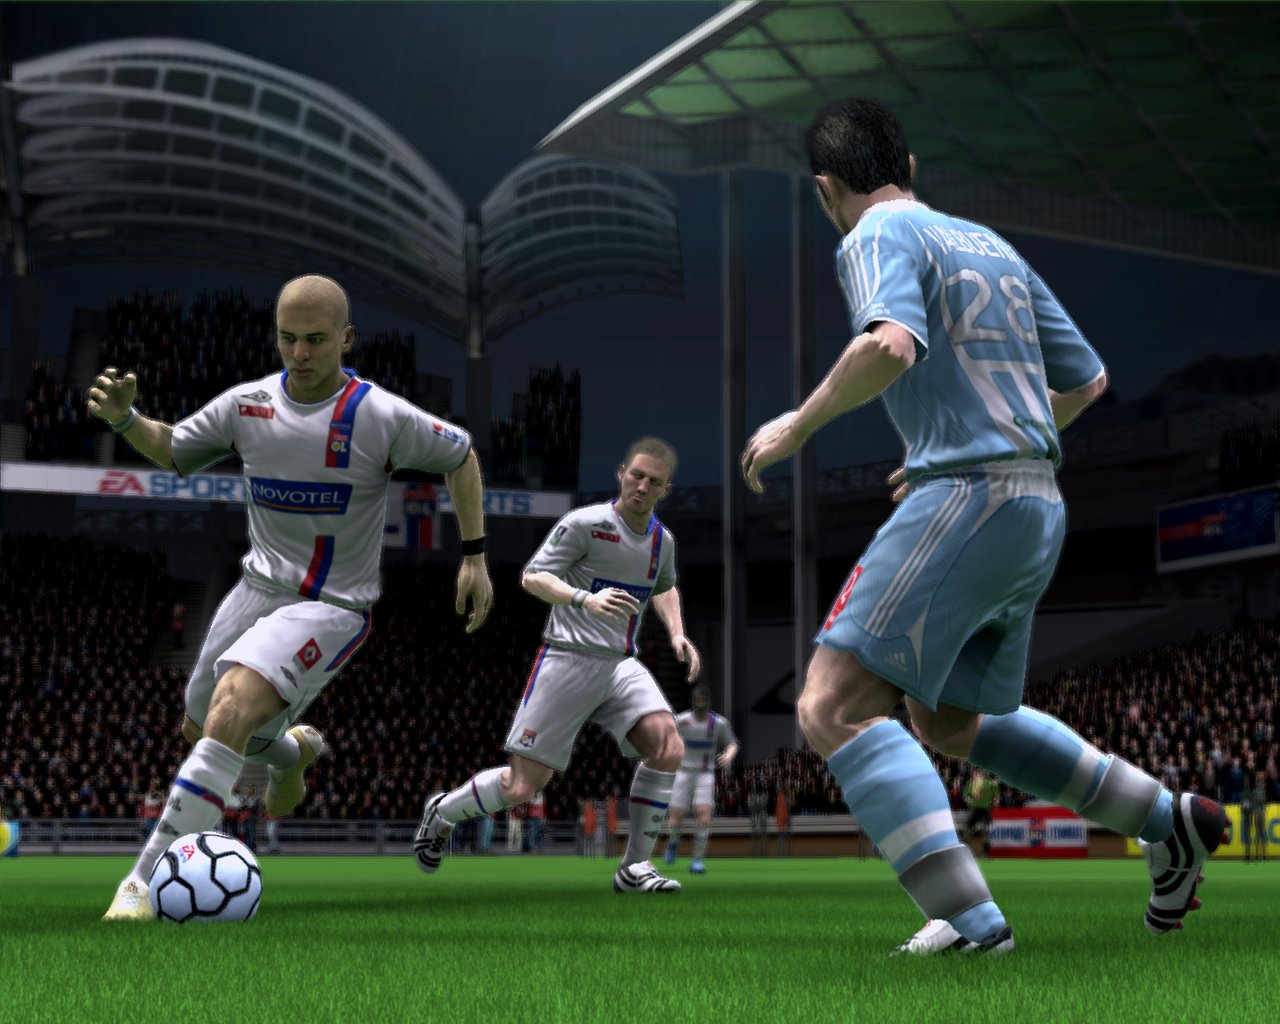 FIFA 2009